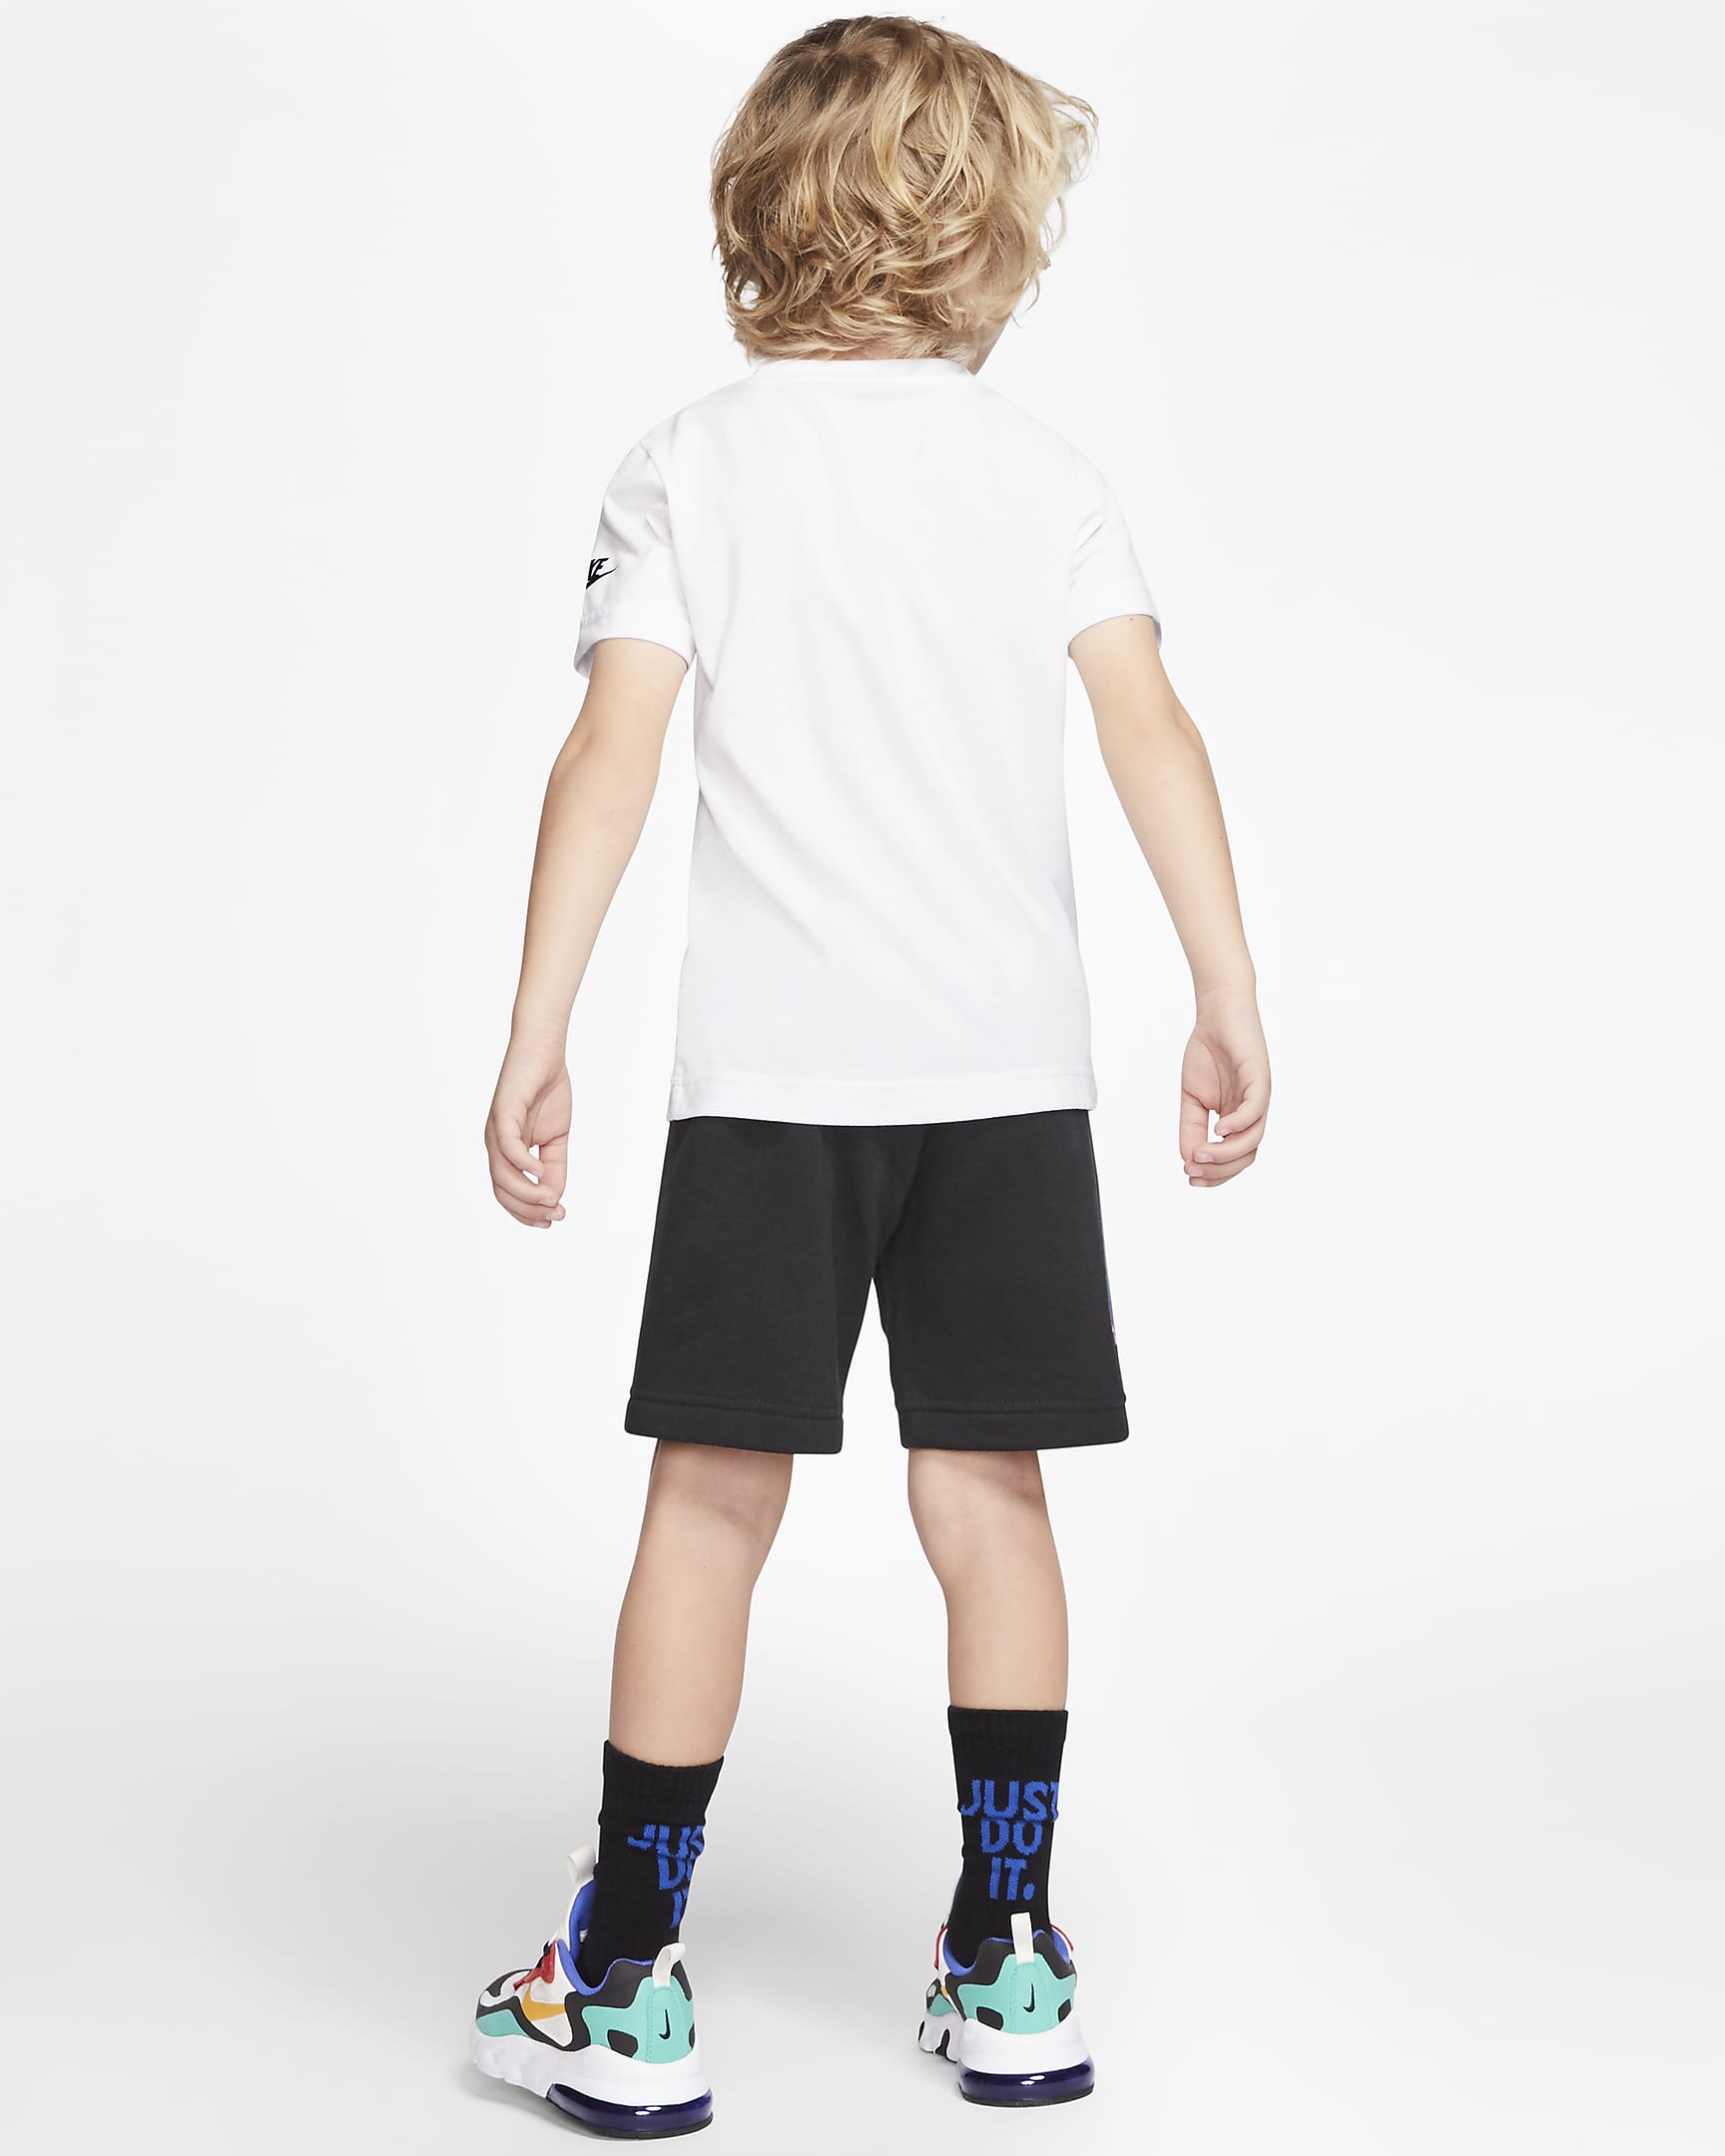 Conjunto de playera y shorts para niños talla pequeña Nike. Nike.com